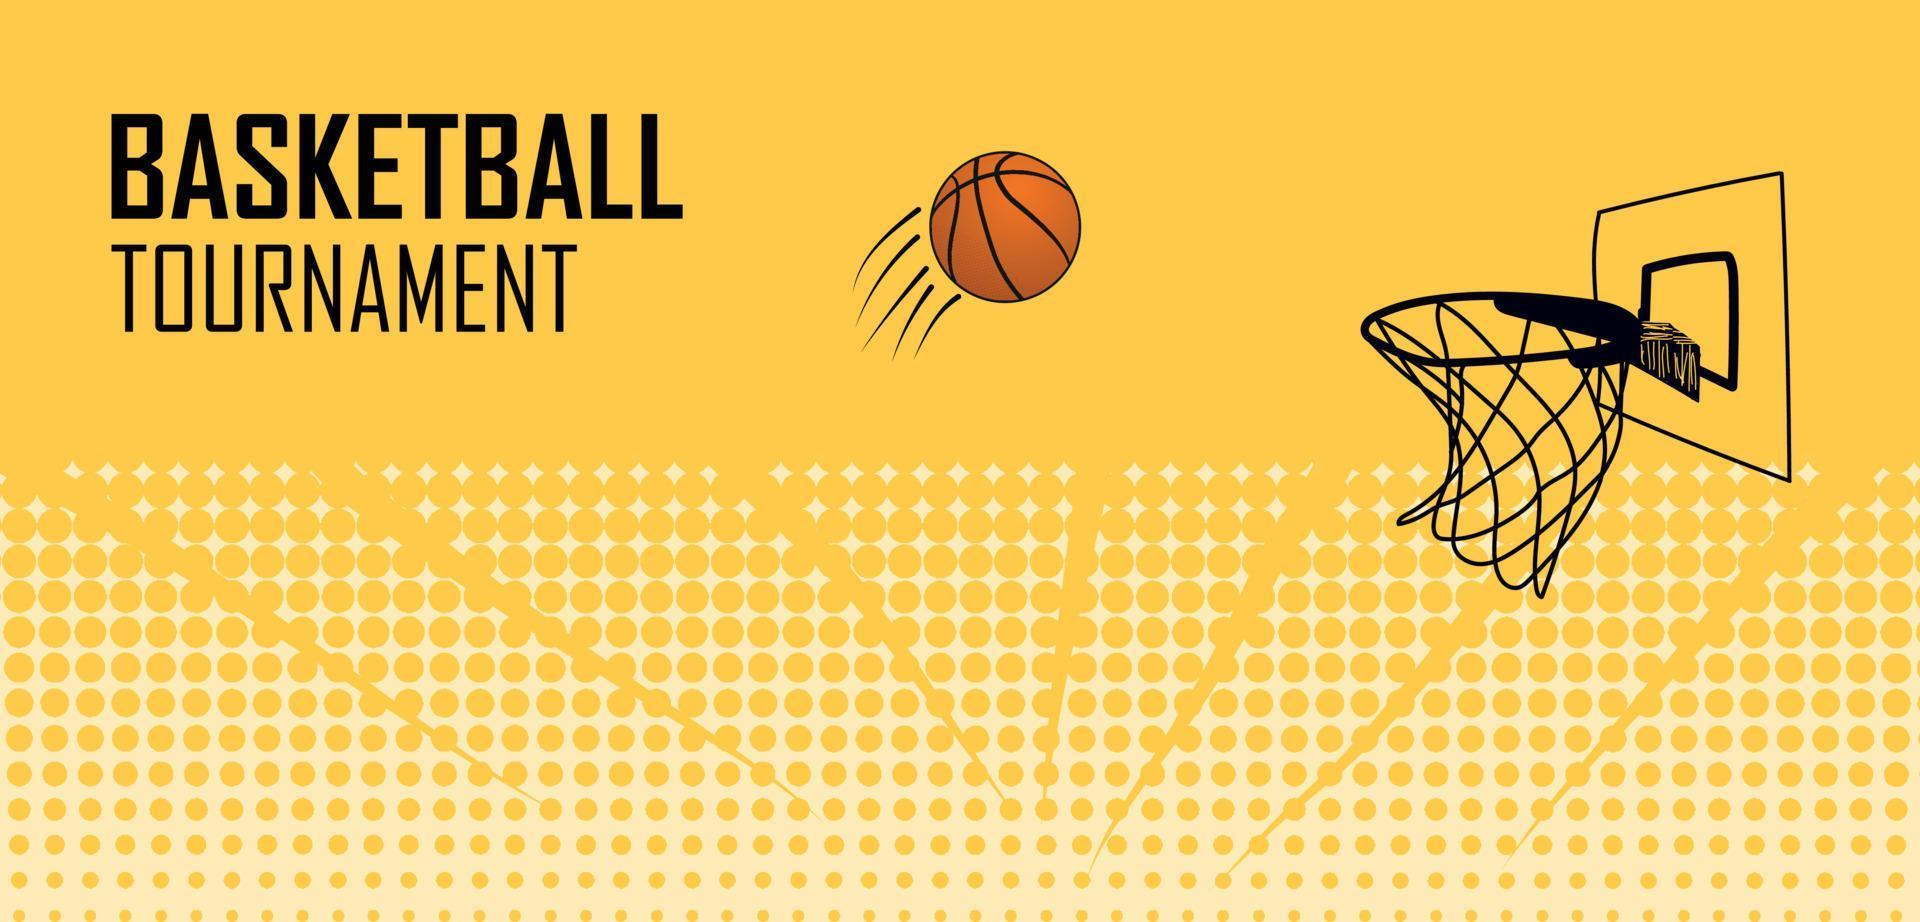 basketboll affisch design med halvton grunge och basketboll ring på gul bakgrund vektor